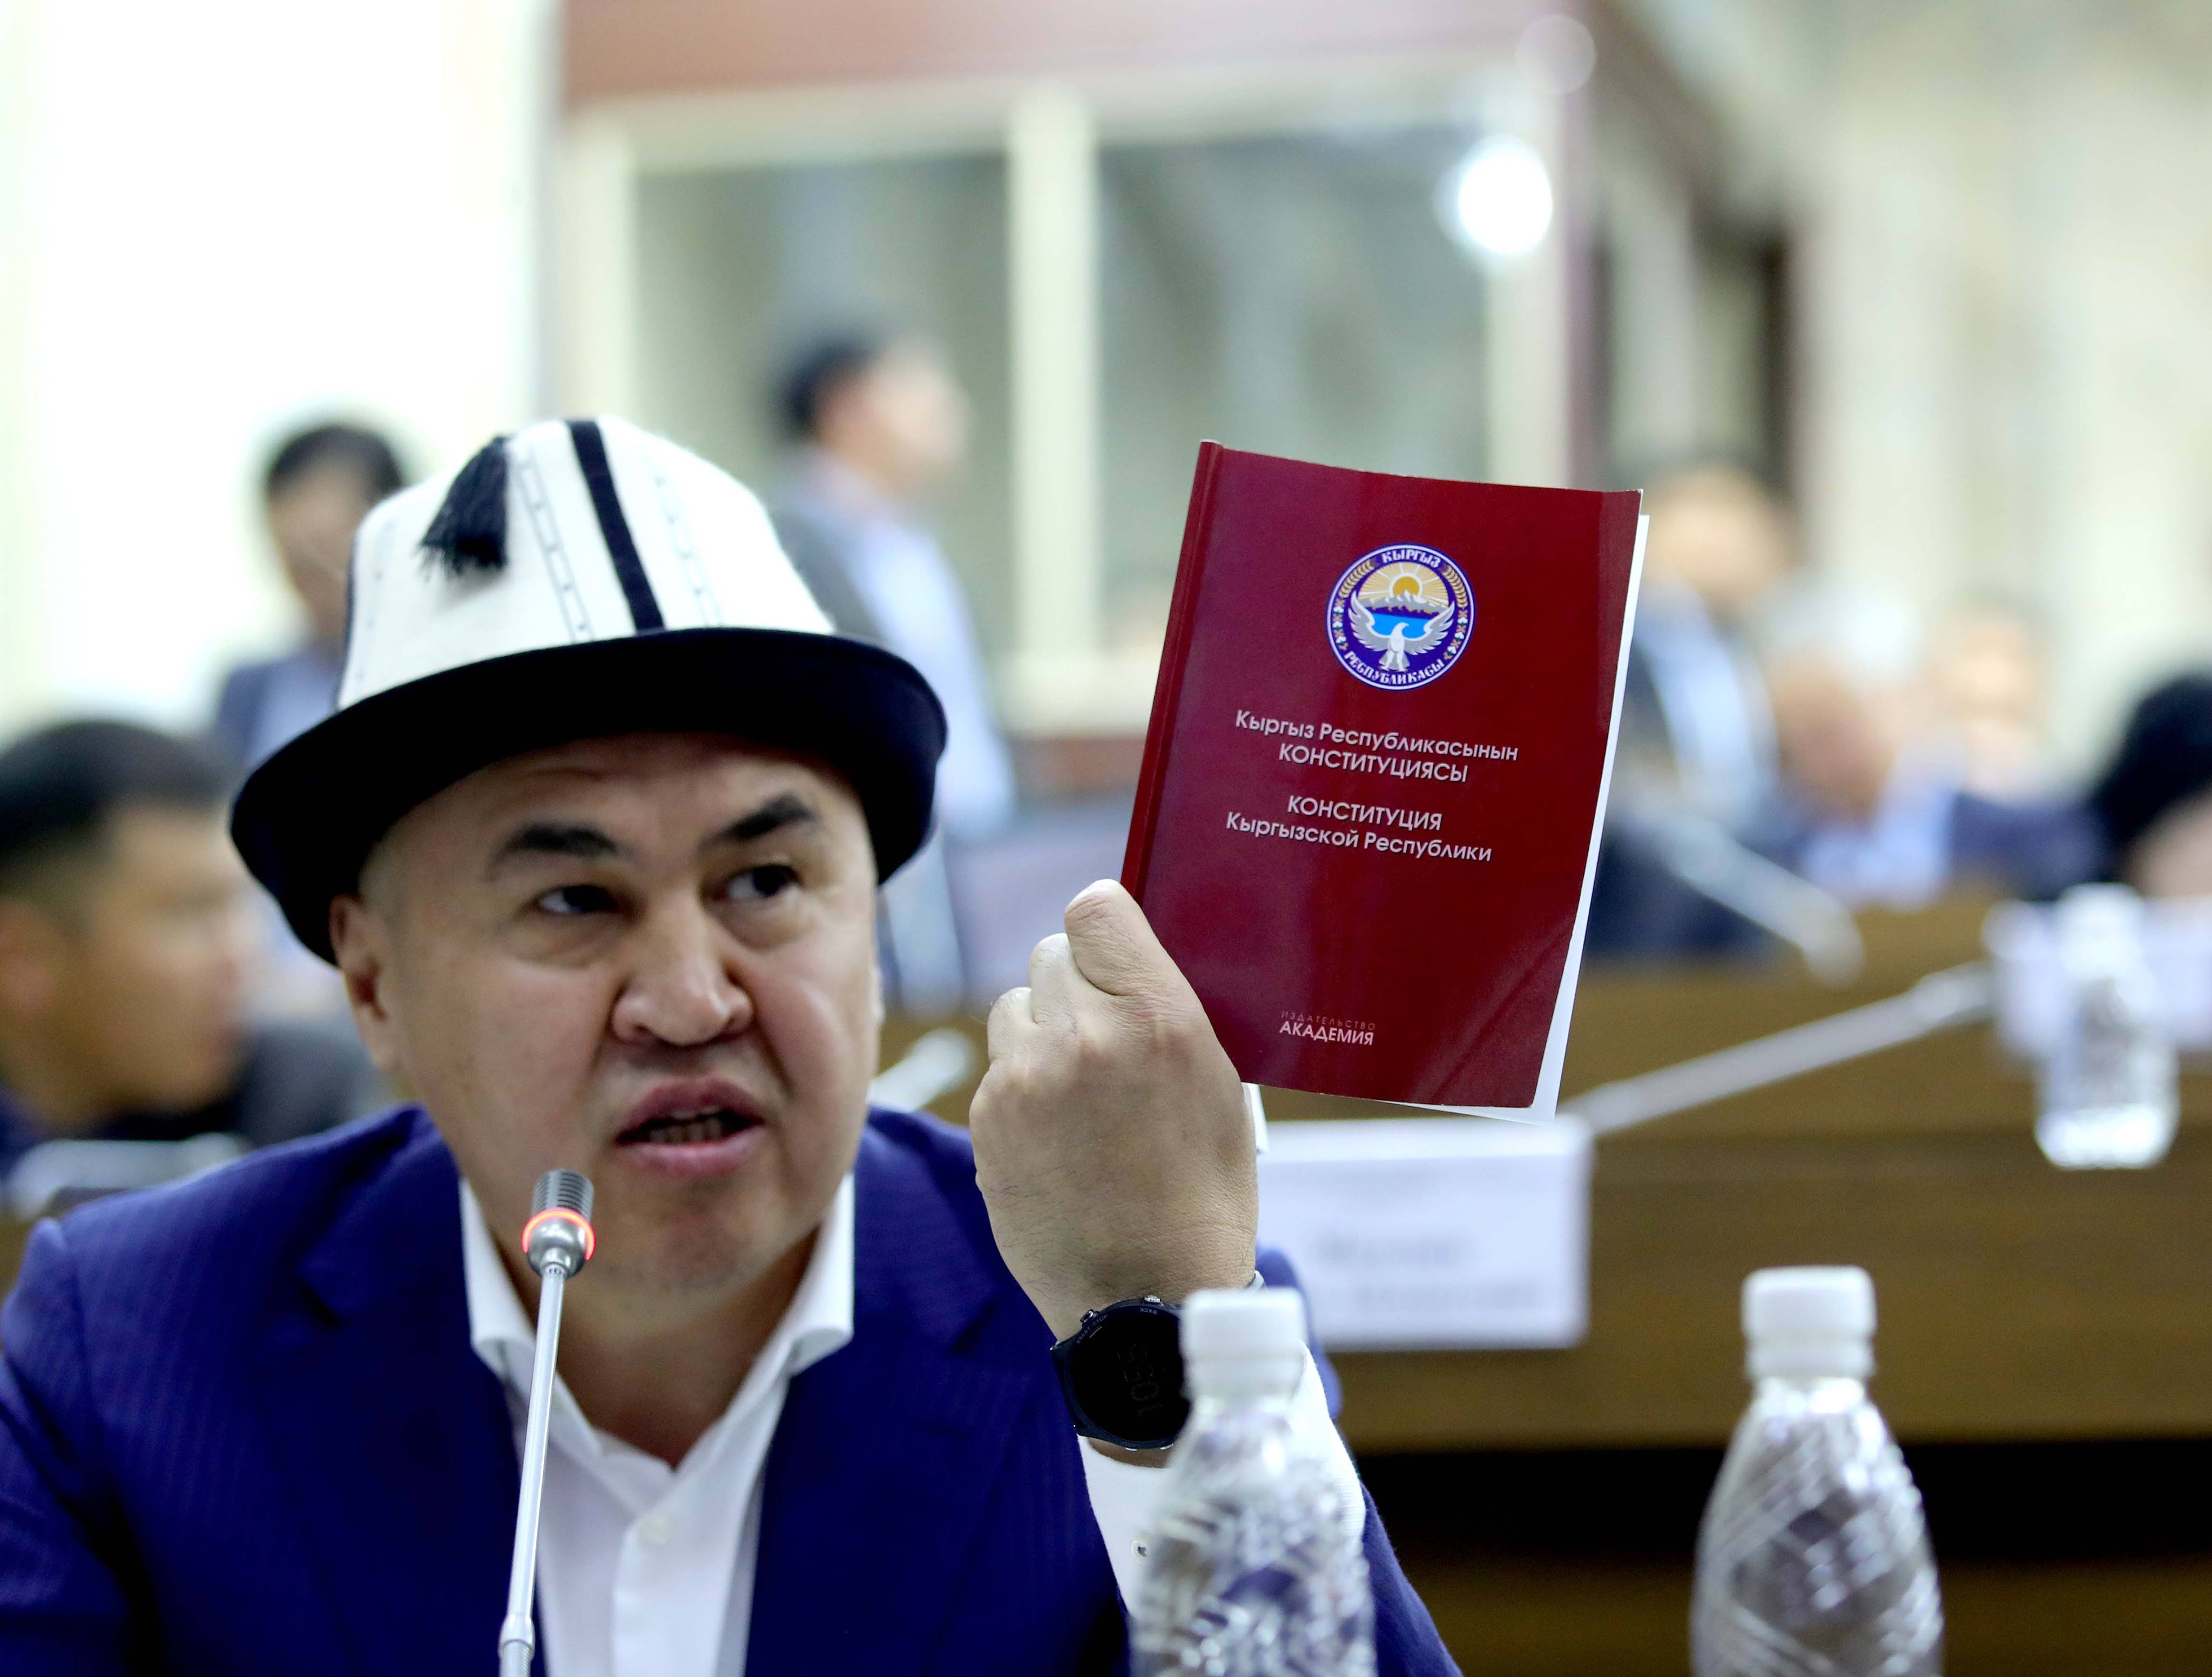 Конституция Кыргызской Республики 2021